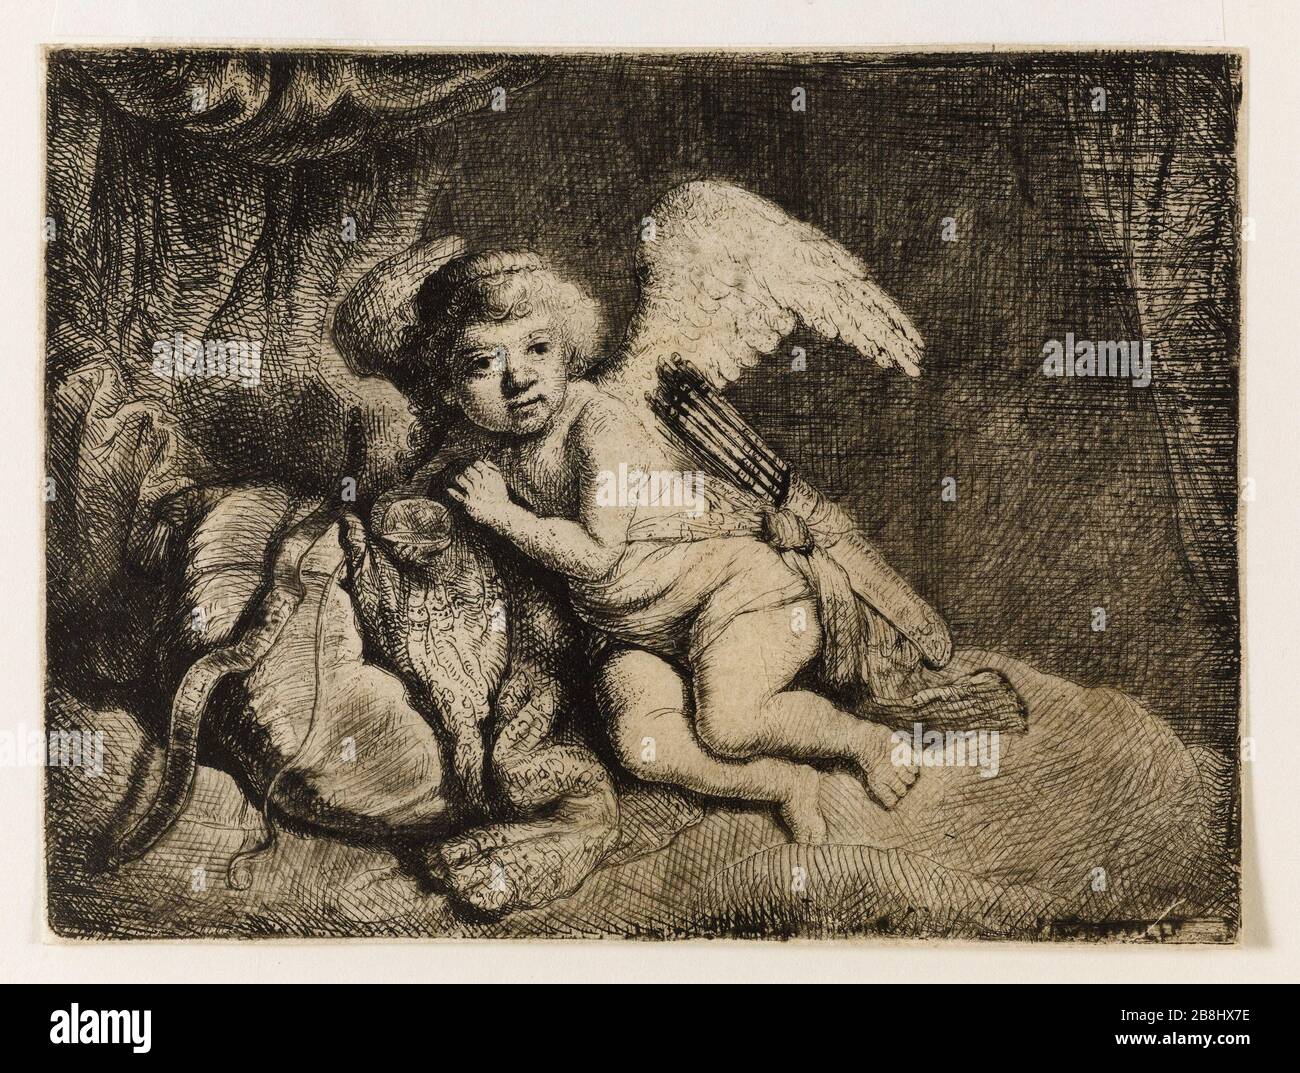 Cupid Rest (Bartsch 132) Rembrandt (École de). Le Repos de Cupidon (Bartsch 132). Eau-forte sur papier européen, 1648. Musée des Beaux-Arts de la Ville de Paris, Petit Palais. Foto Stock